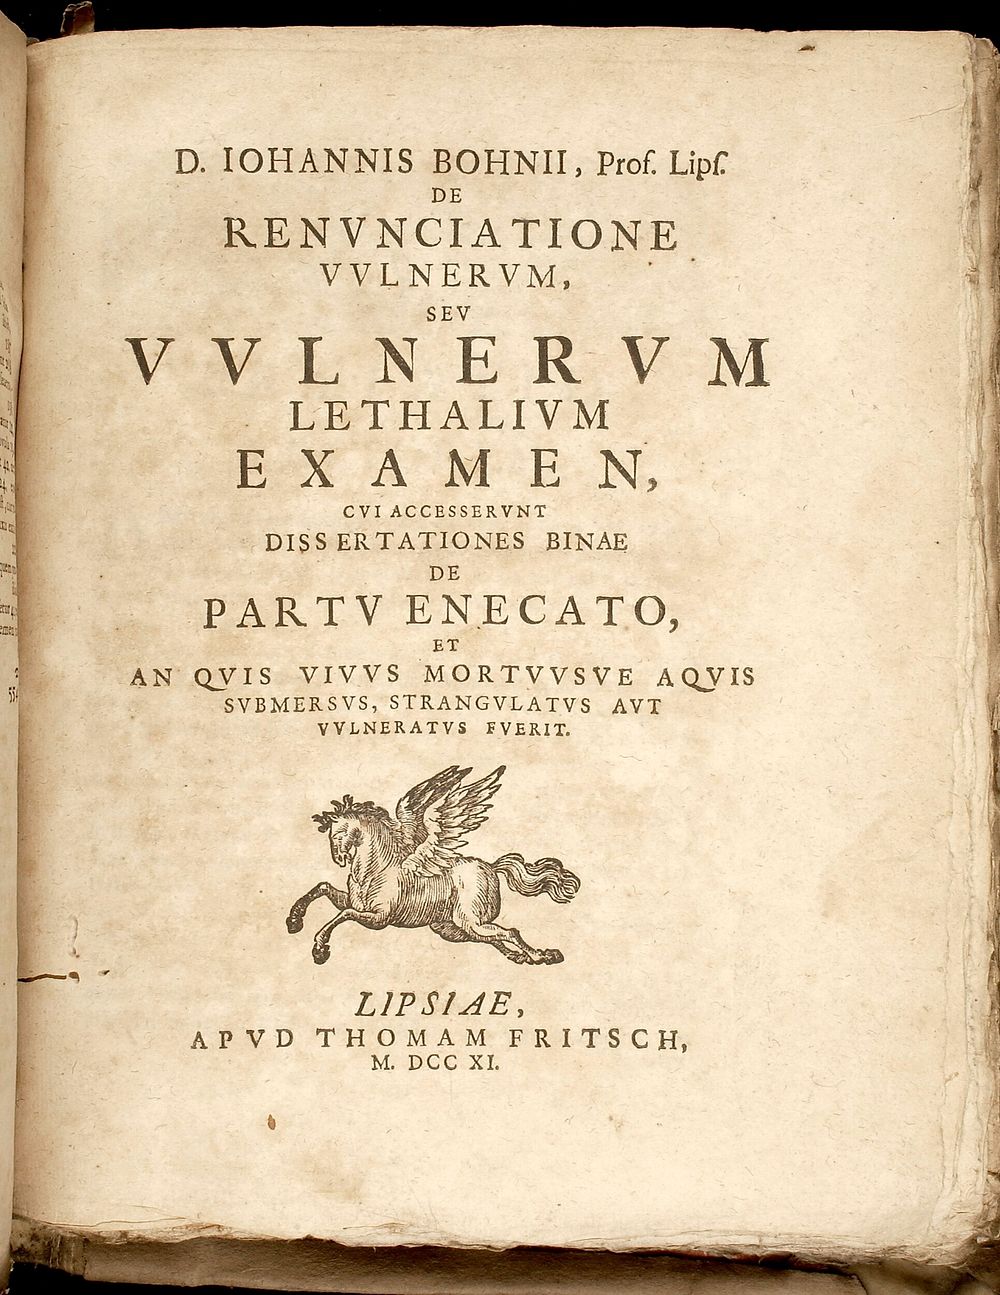 Title page of Bohn's De renvnciatione vvlnervm